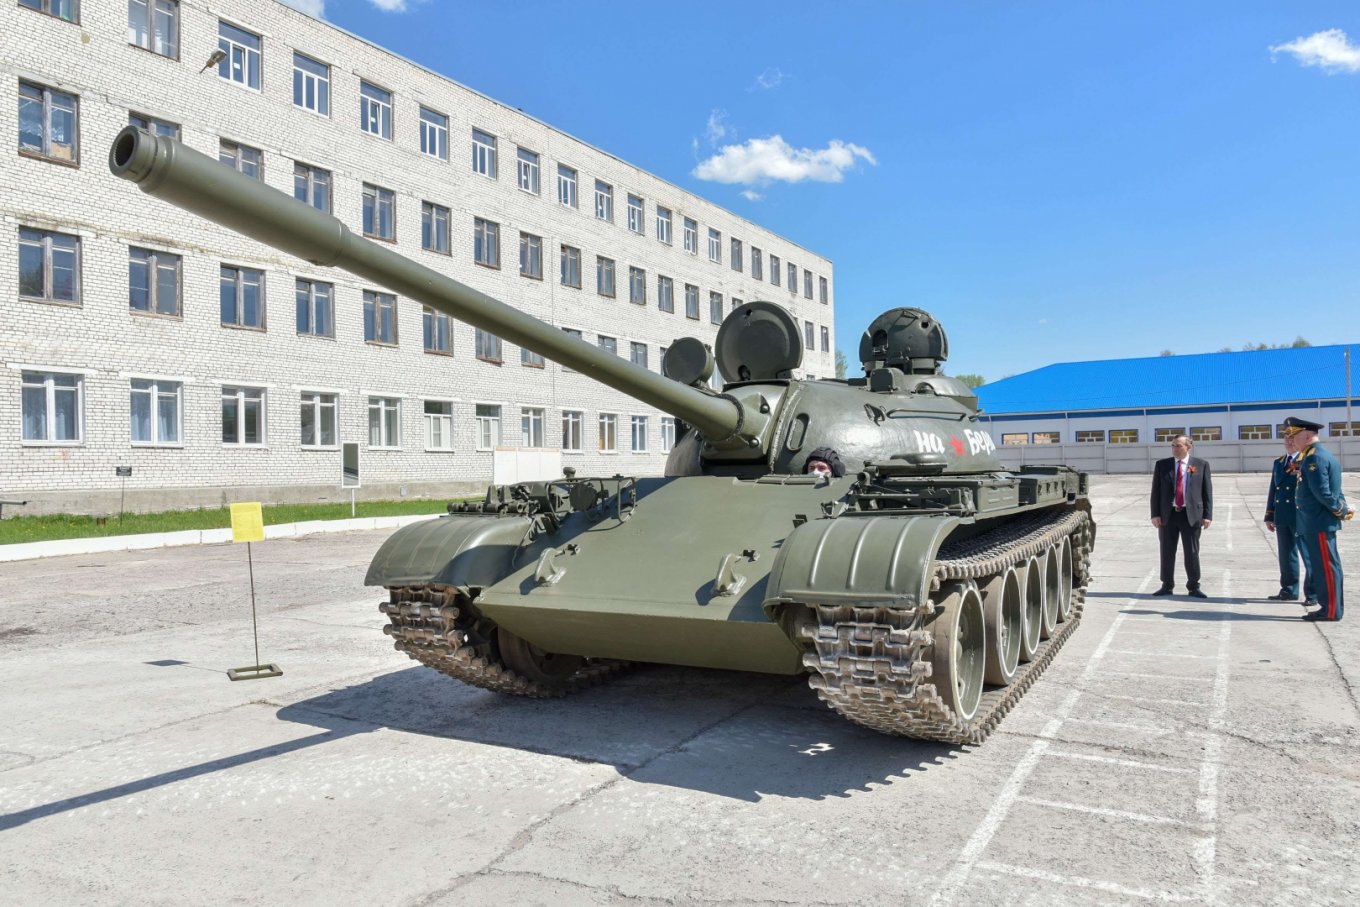 Т-55